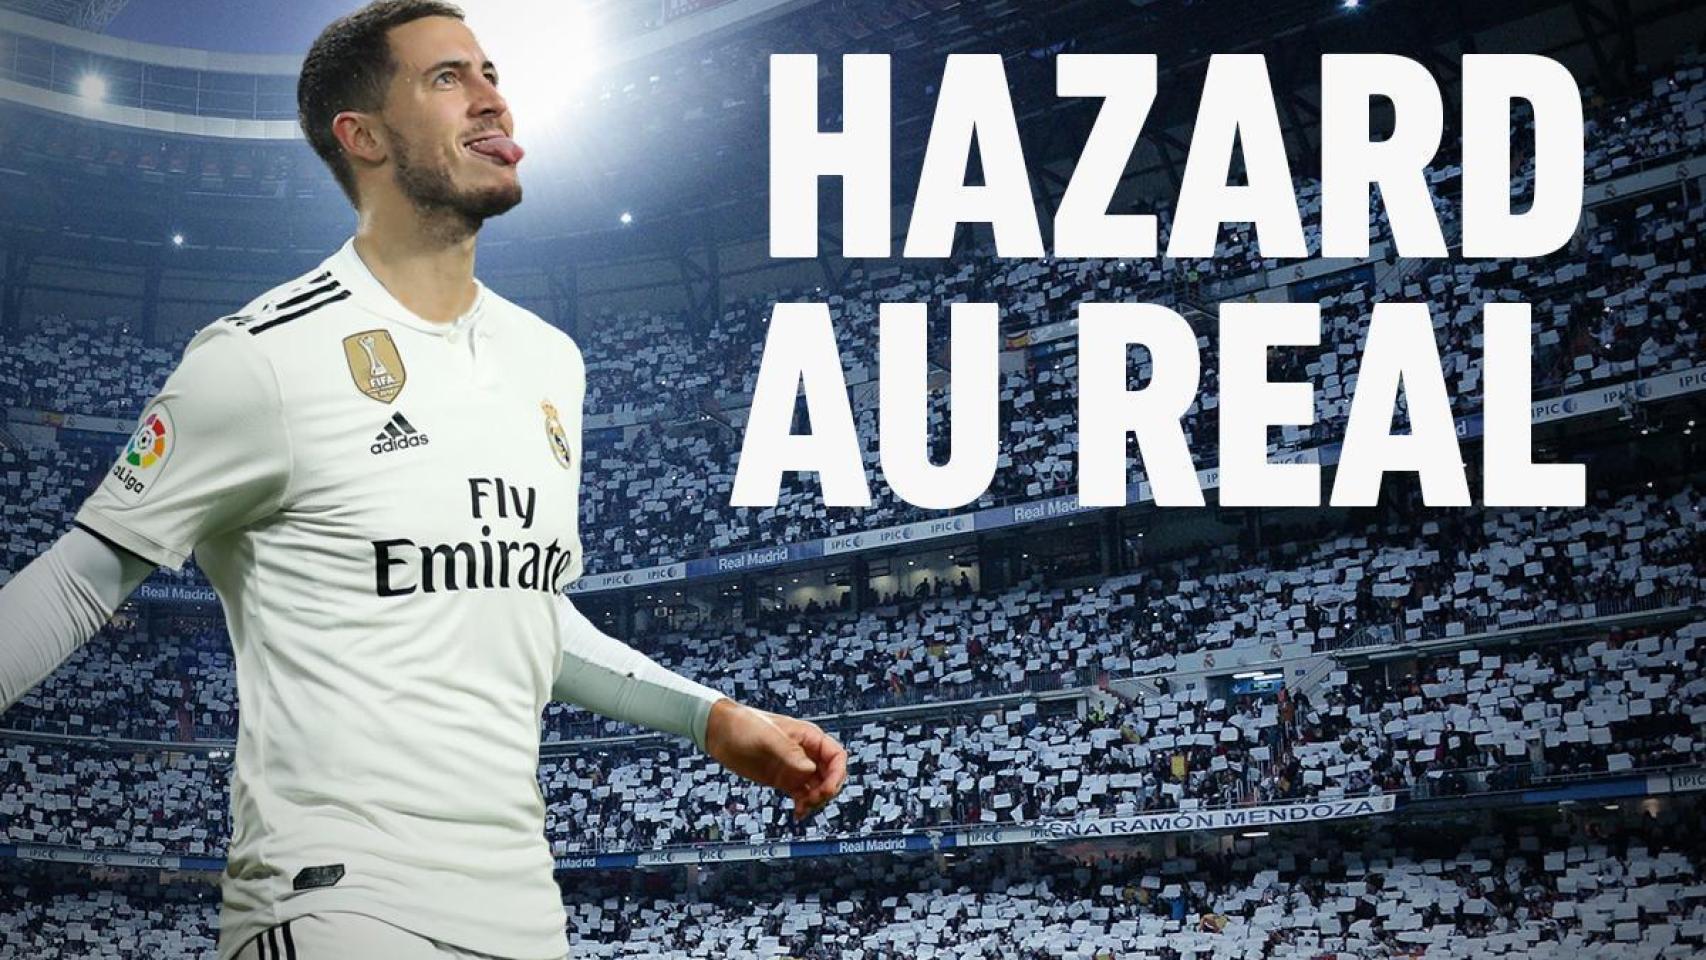 Hazard, cuestión de días: L'Équipe ya le viste con la camiseta del Real Madrid